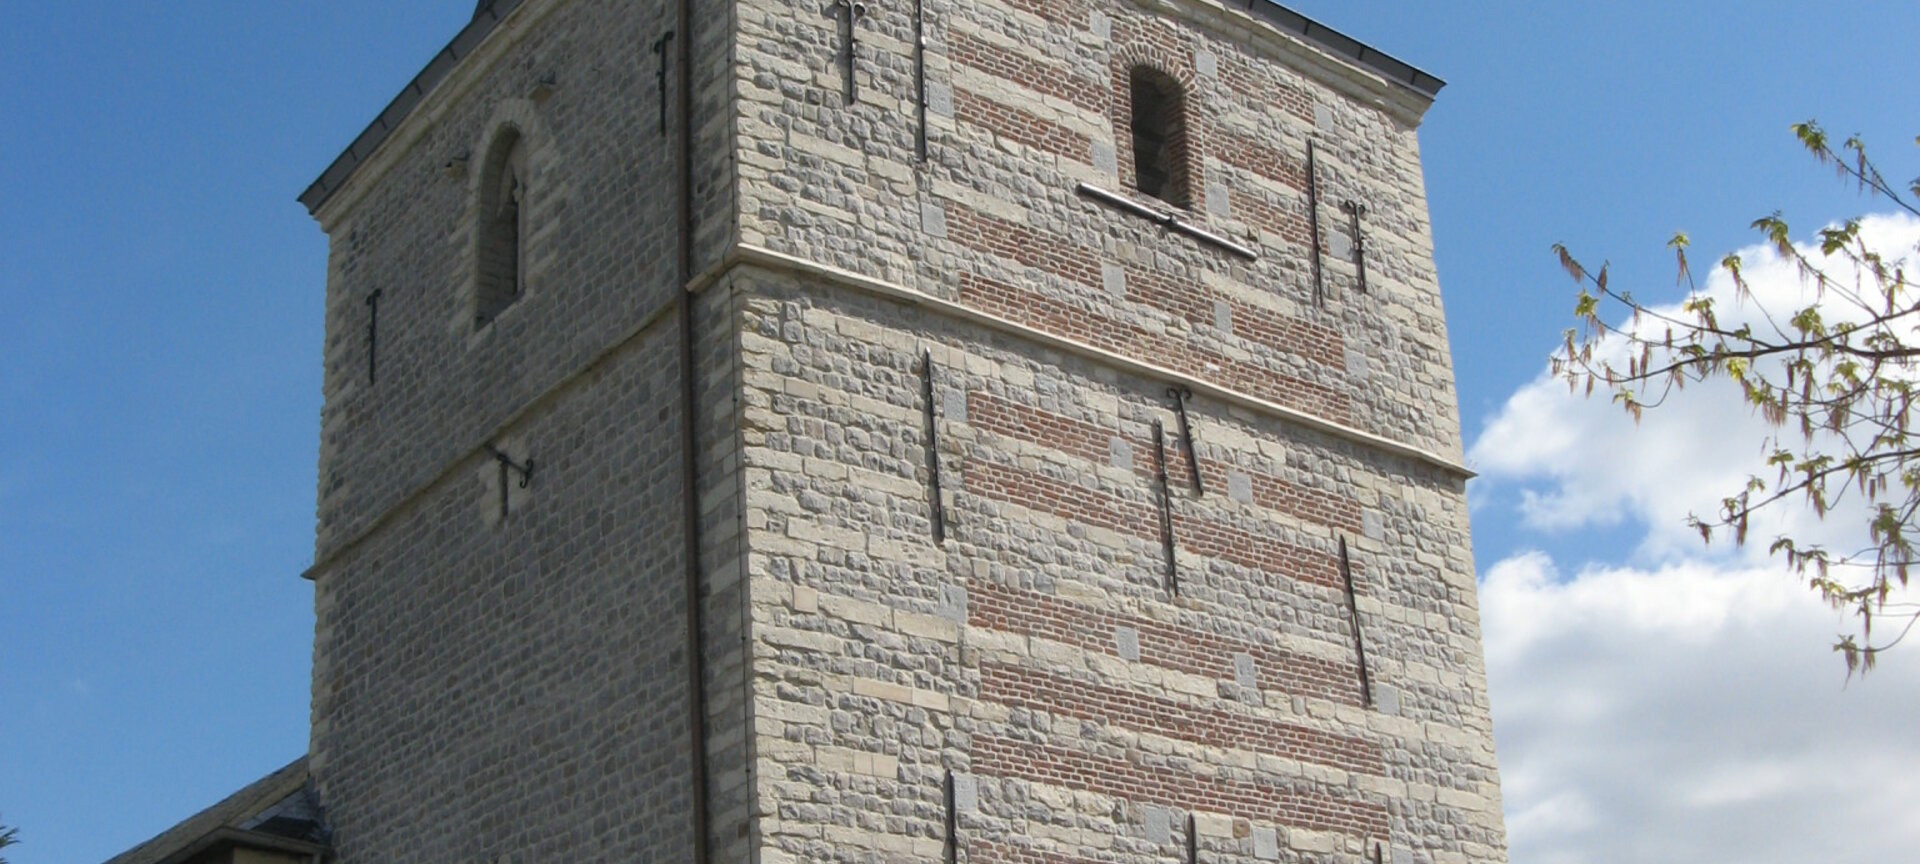 Kerk van Wilderen met bezoekerscentrum in toren - Kerk van Wilderen